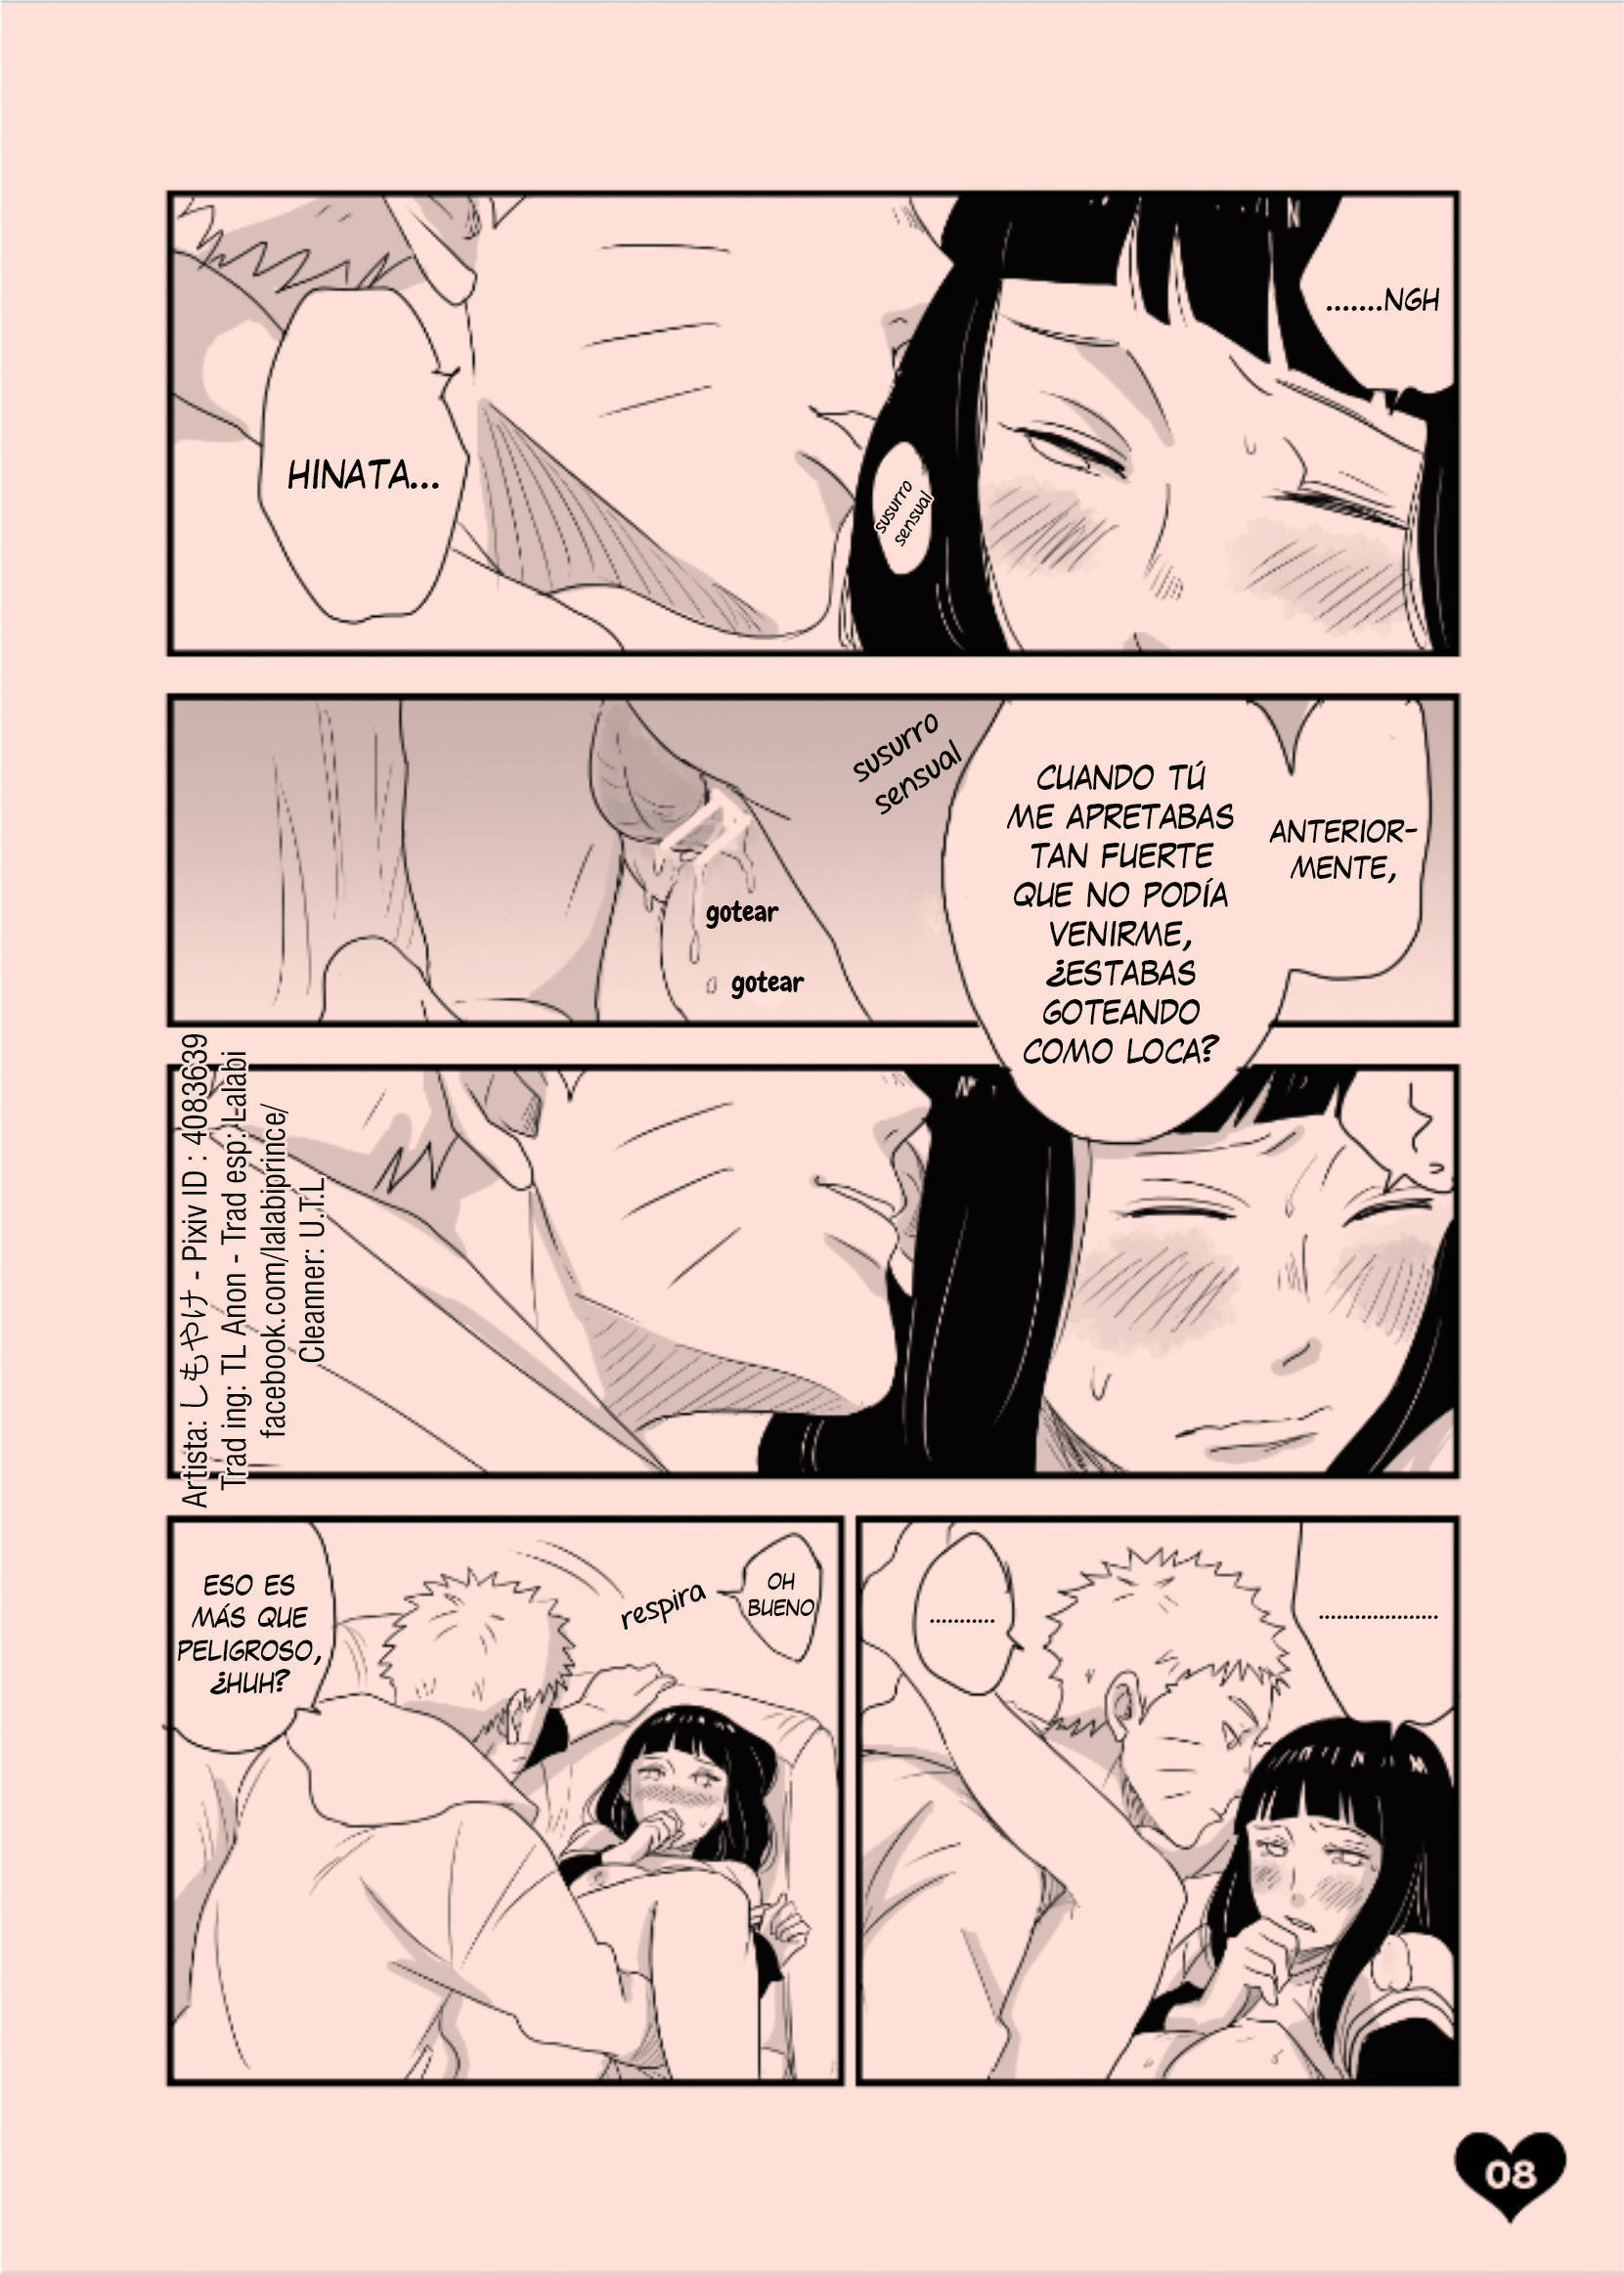 Comic Naruto y Hinata Follando en el Sofa Orgasmo - naruto-xxx-porno-follando-video-historieta-hinata-vagina-tetas-jutsu-sexy (6)